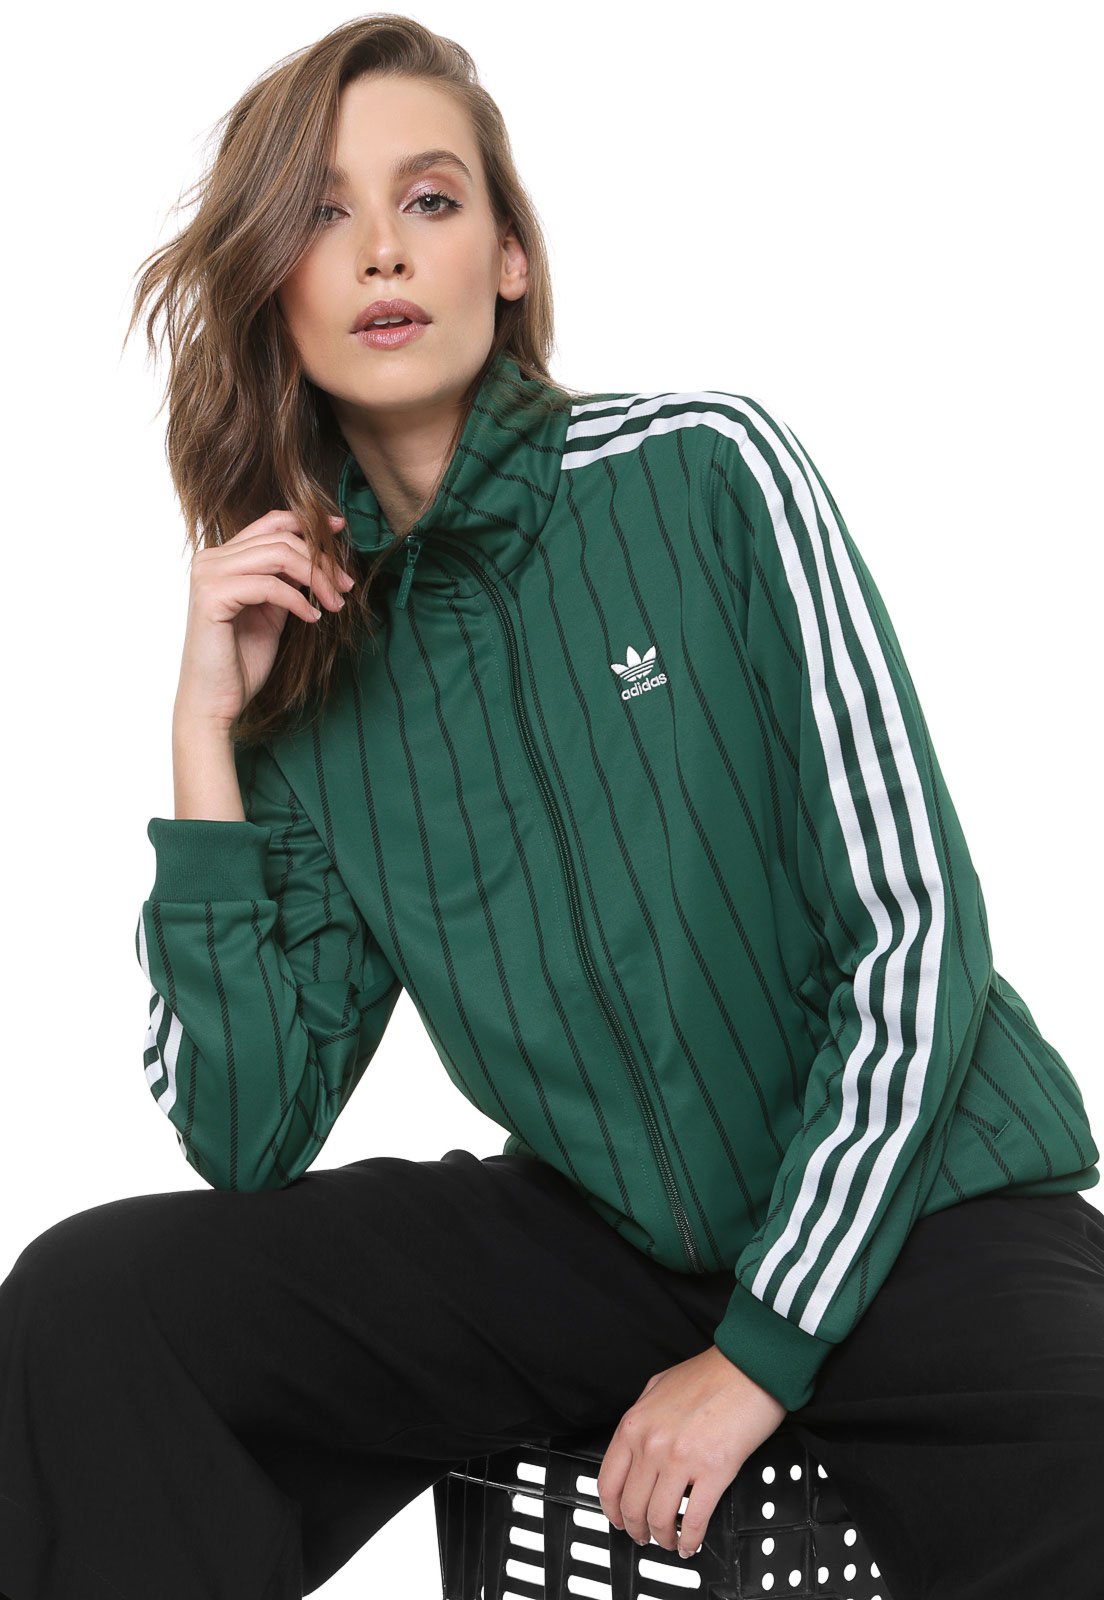 Jaqueta adidas Originals Veludo Track Top Verde - Compre Agora